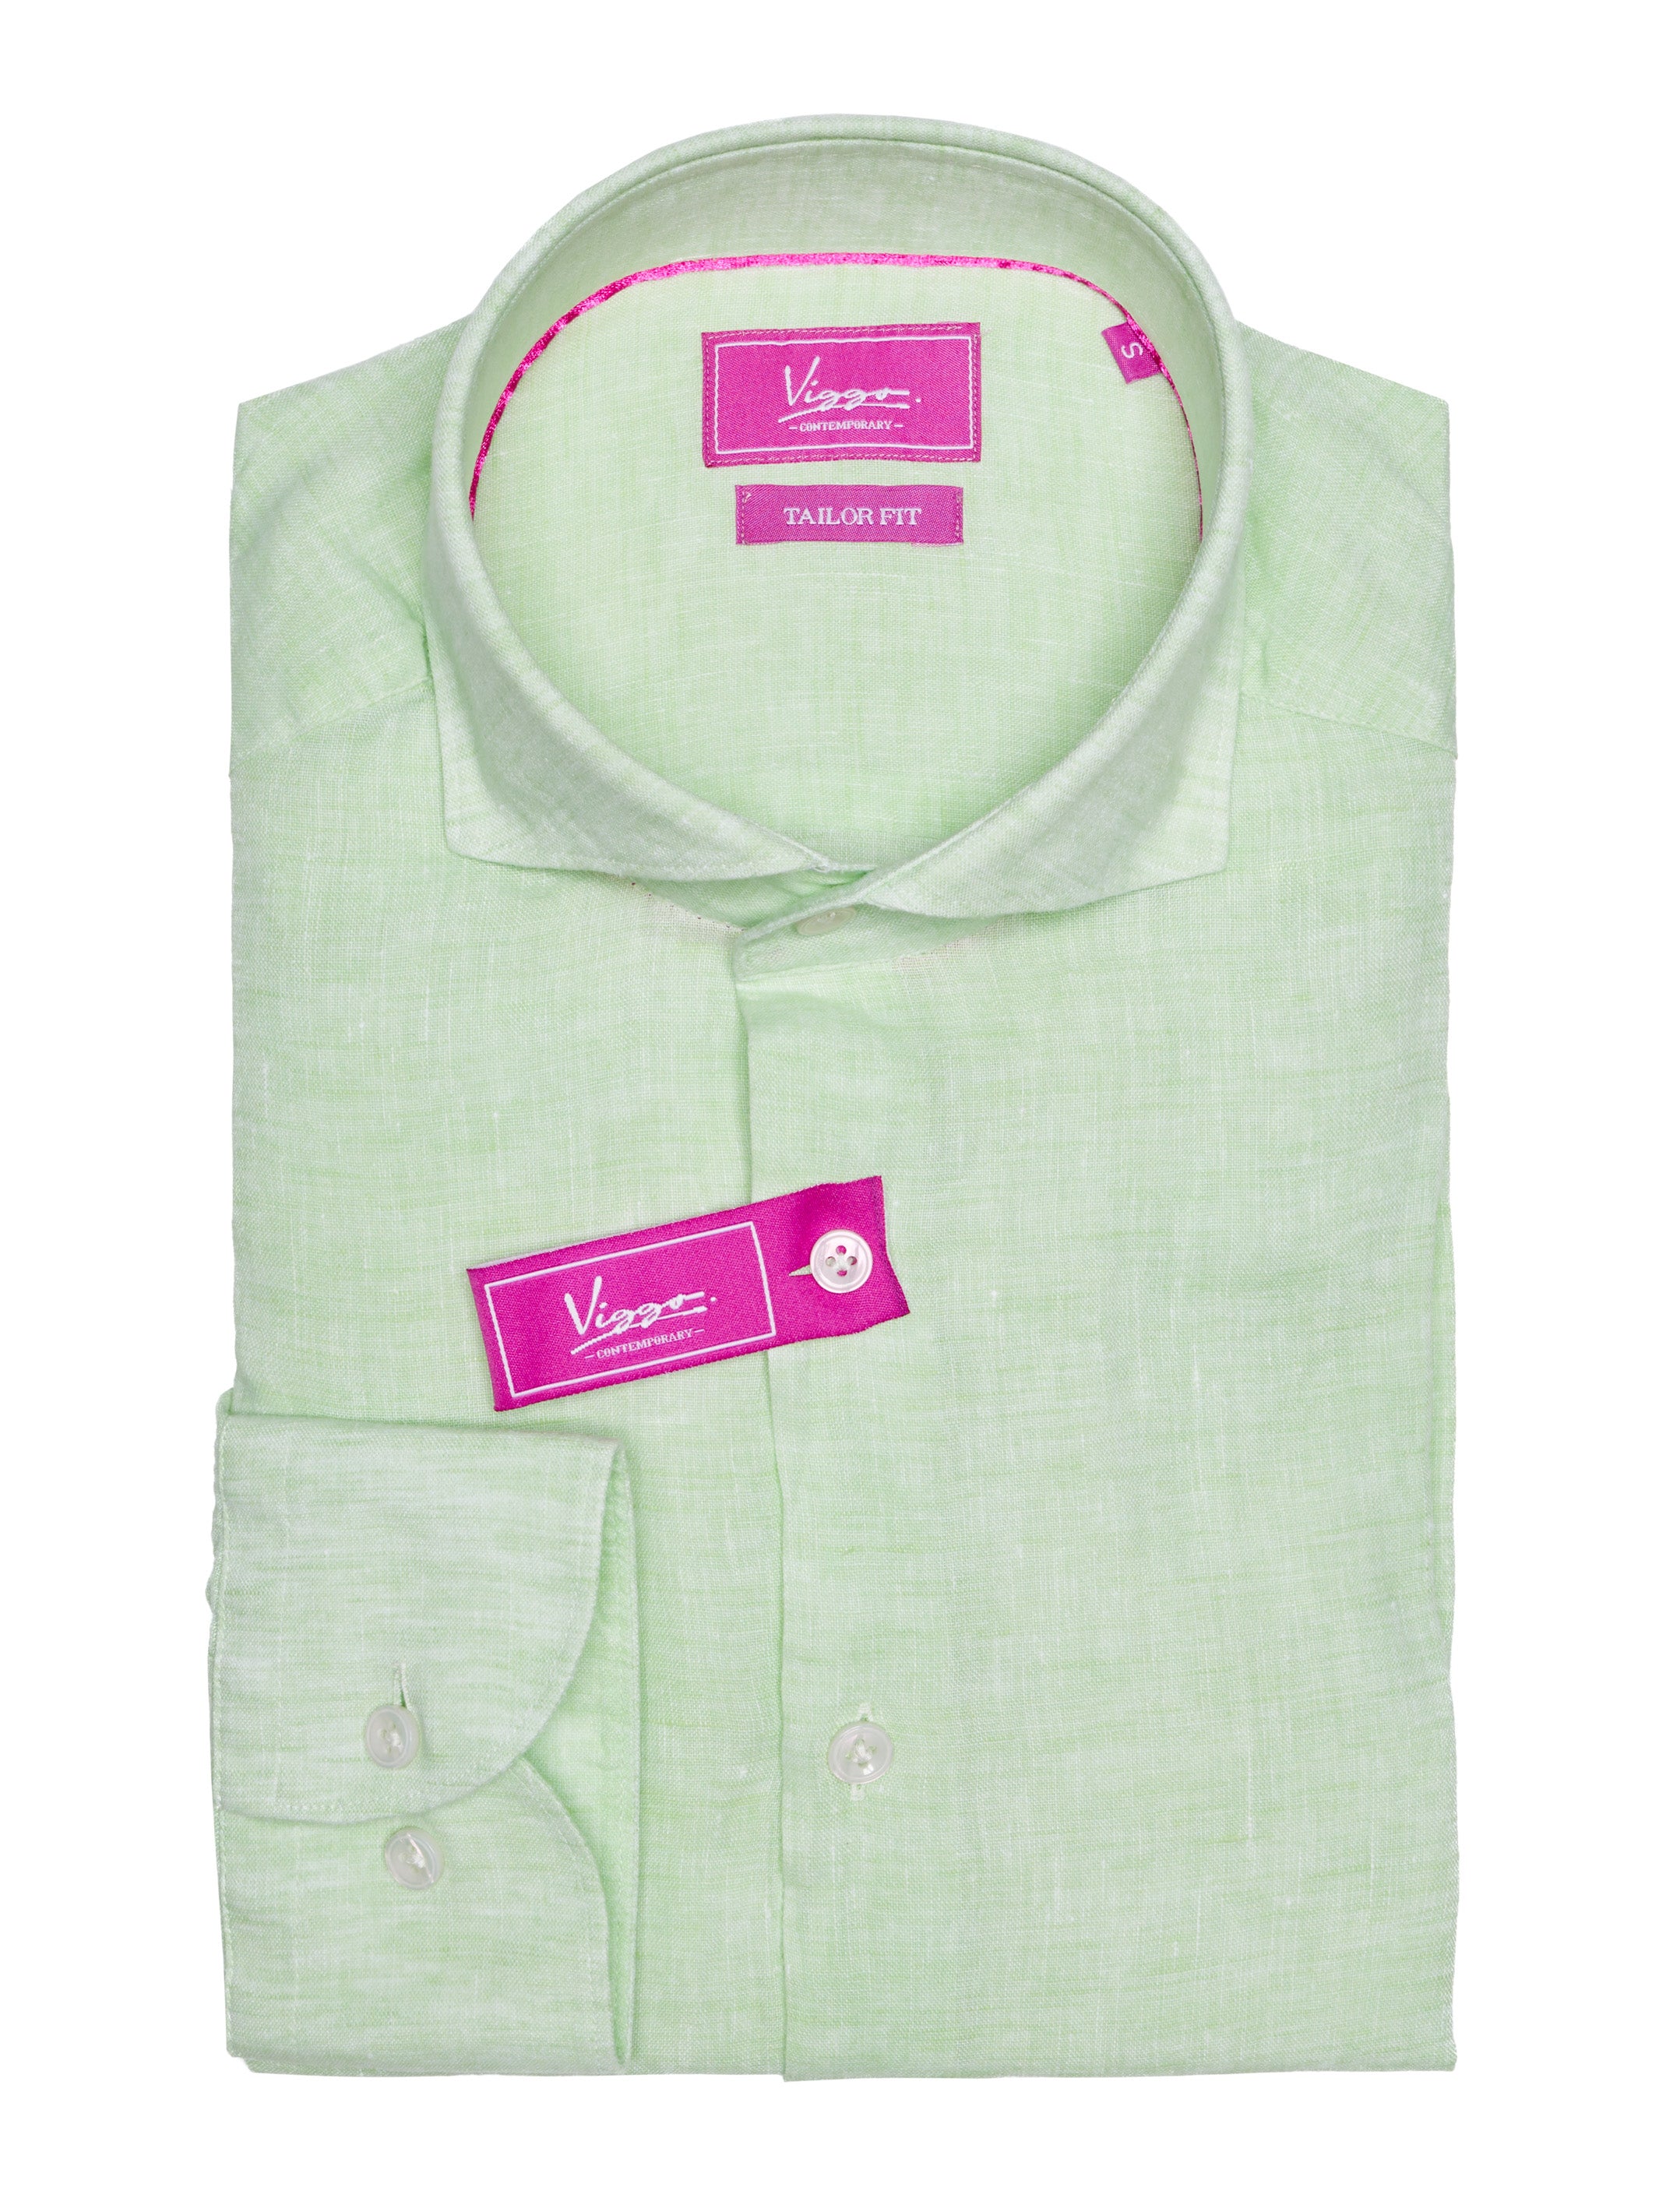 Green linen shirt